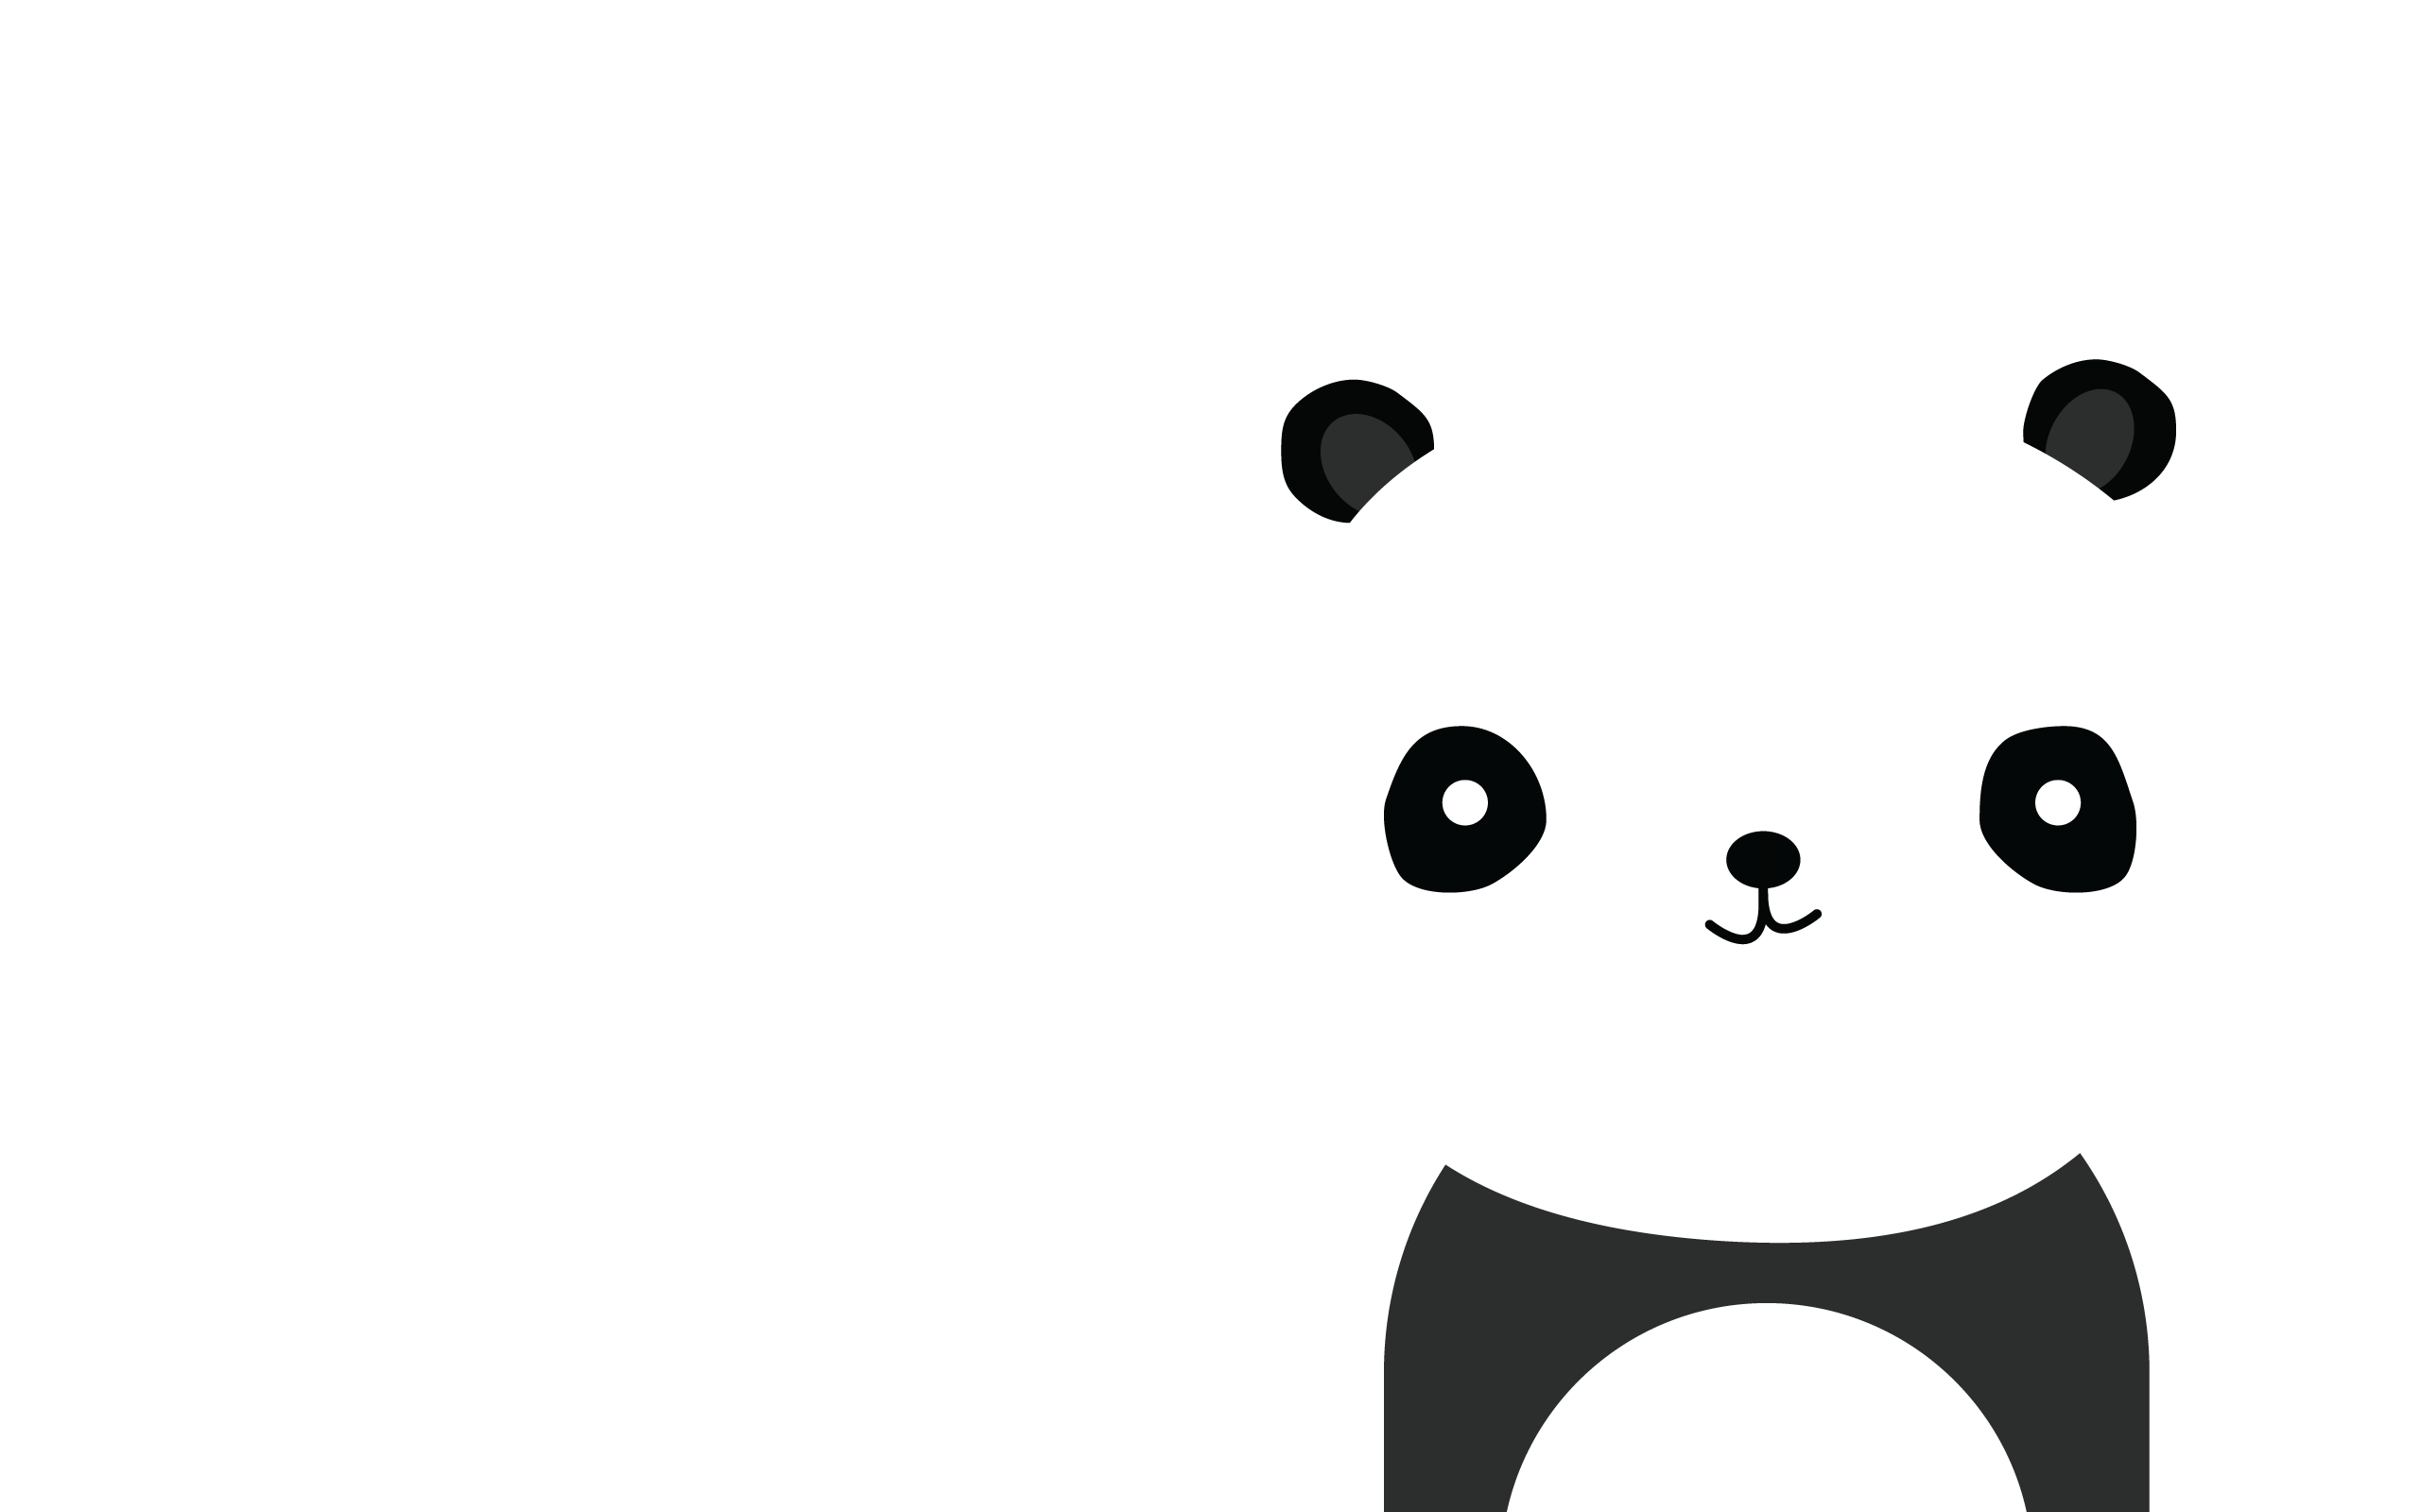 Wallpaper For > Cute Panda Wallpaper Tumblr